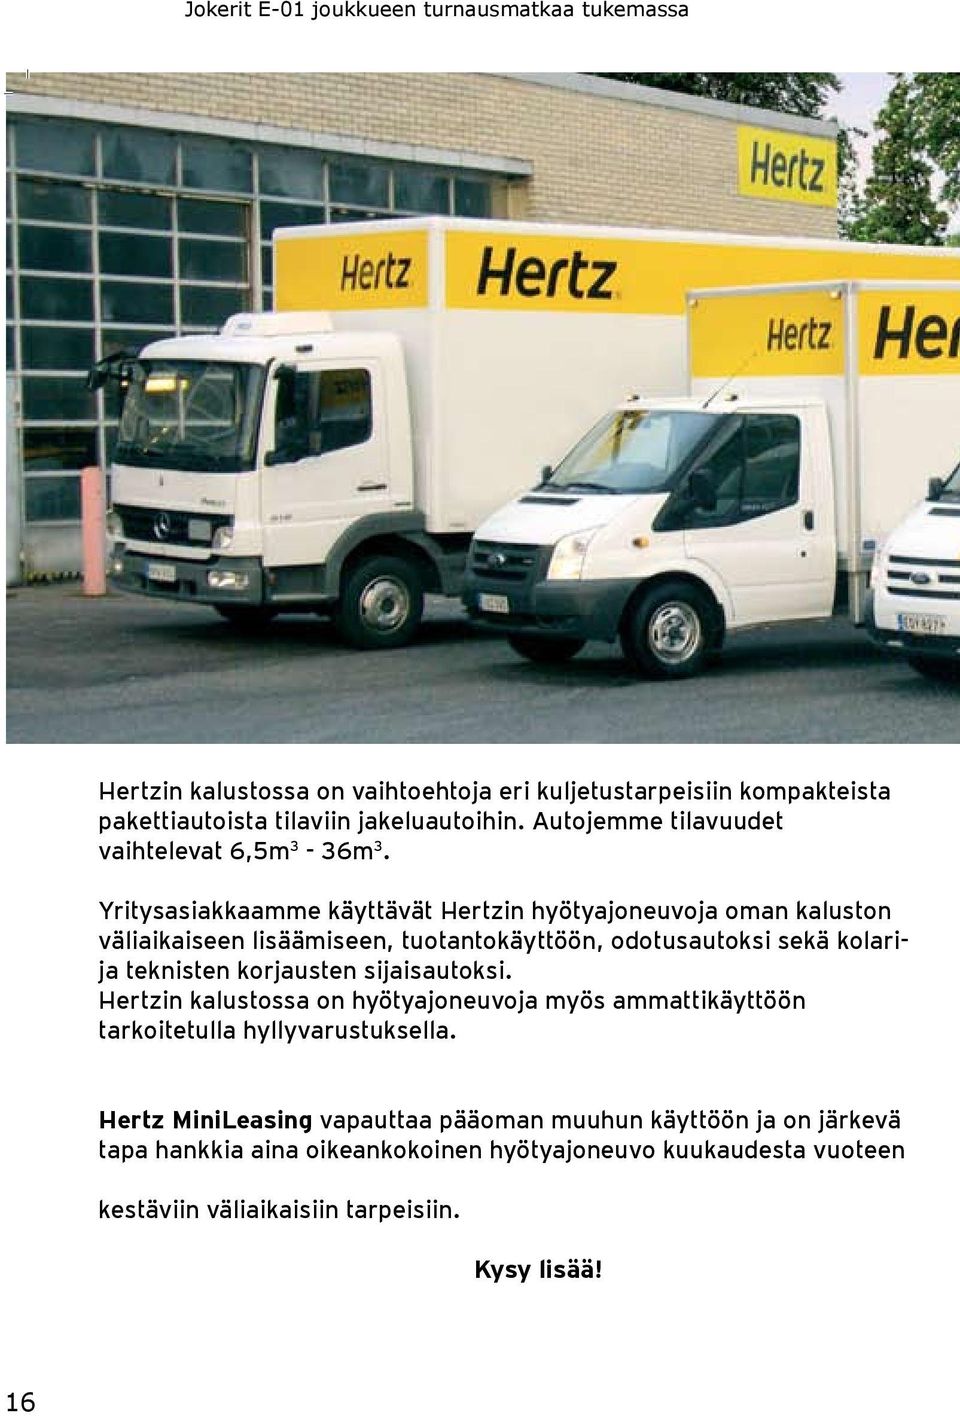 Yritysasiakkaamme käyttävät Hertzin hyötyajoneuvoja oman kaluston väliaikaiseen lisäämiseen, tuotantokäyttöön, odotusautoksi sekä kolarija teknisten korjausten